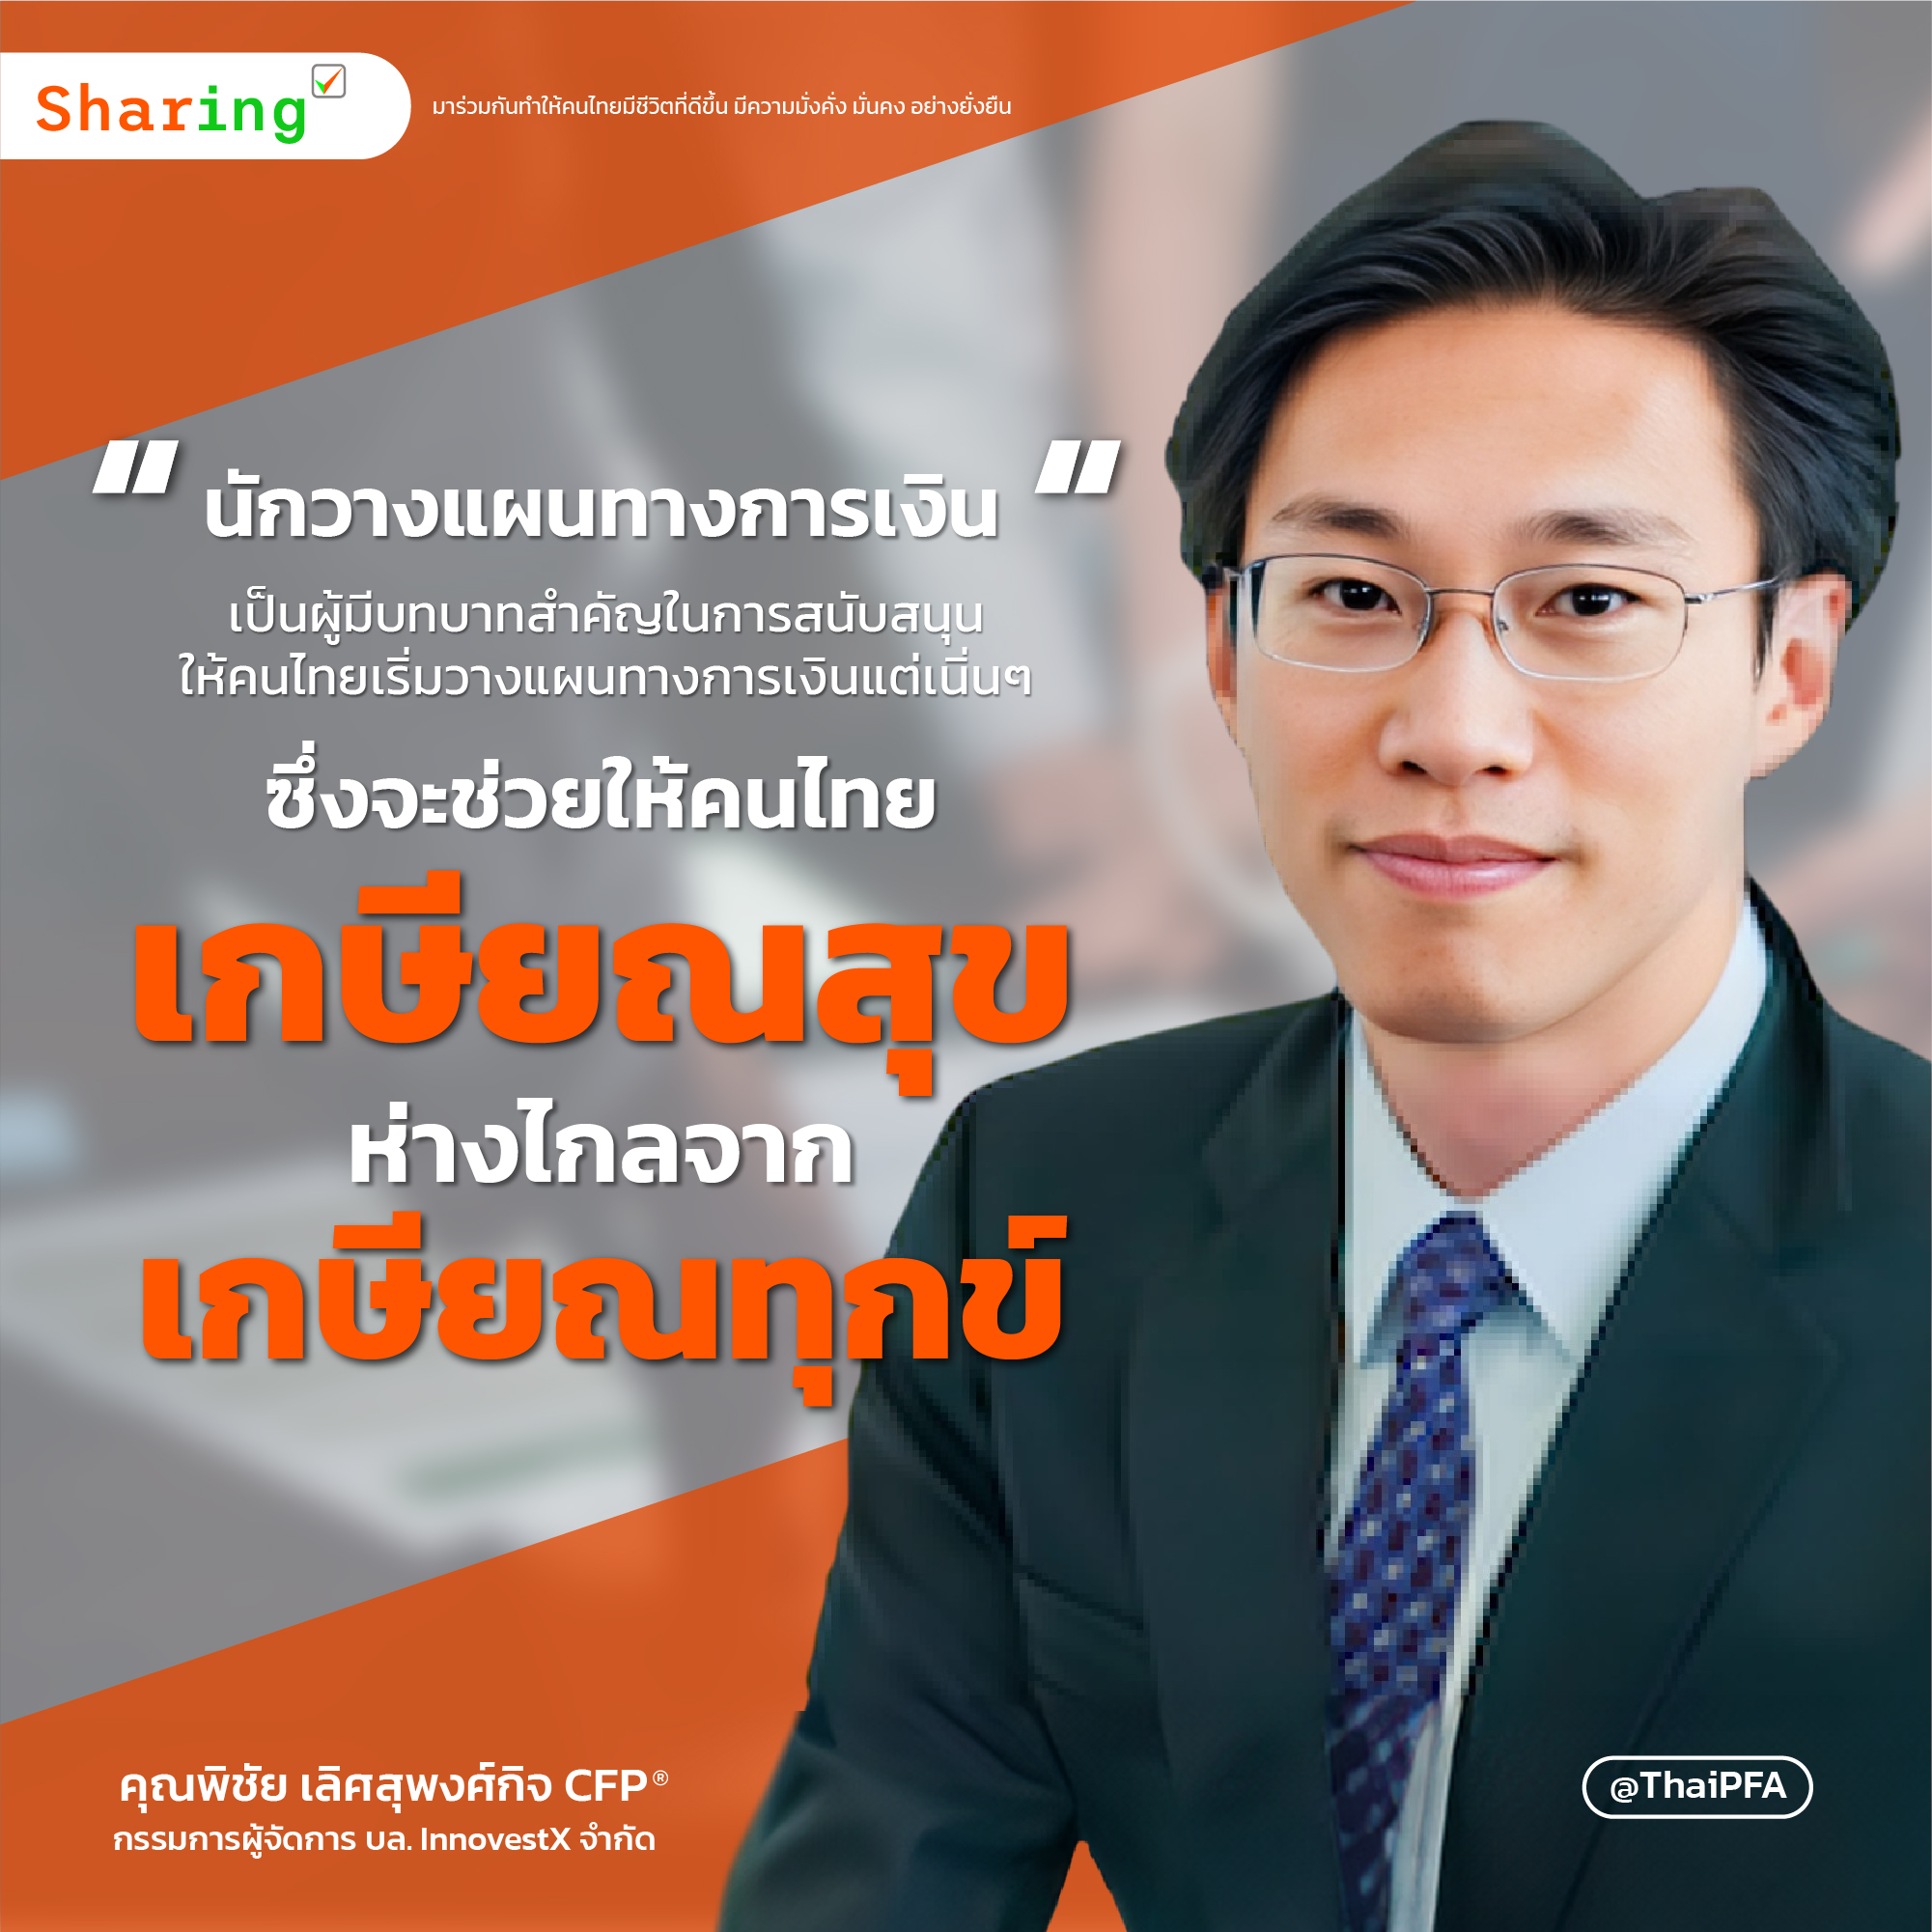 นักวางแผนทางการเงินเป็นผู้มีบทบาทสำคัญในการสนับสนุนให้คนไทยเริ่มวางแผนทางการเงินแต่เนิ่น ๆ ซึ่งจะช่วยให้คนไทย เกษียณสุข ห่างไกลจาก เกษียณทุกข์